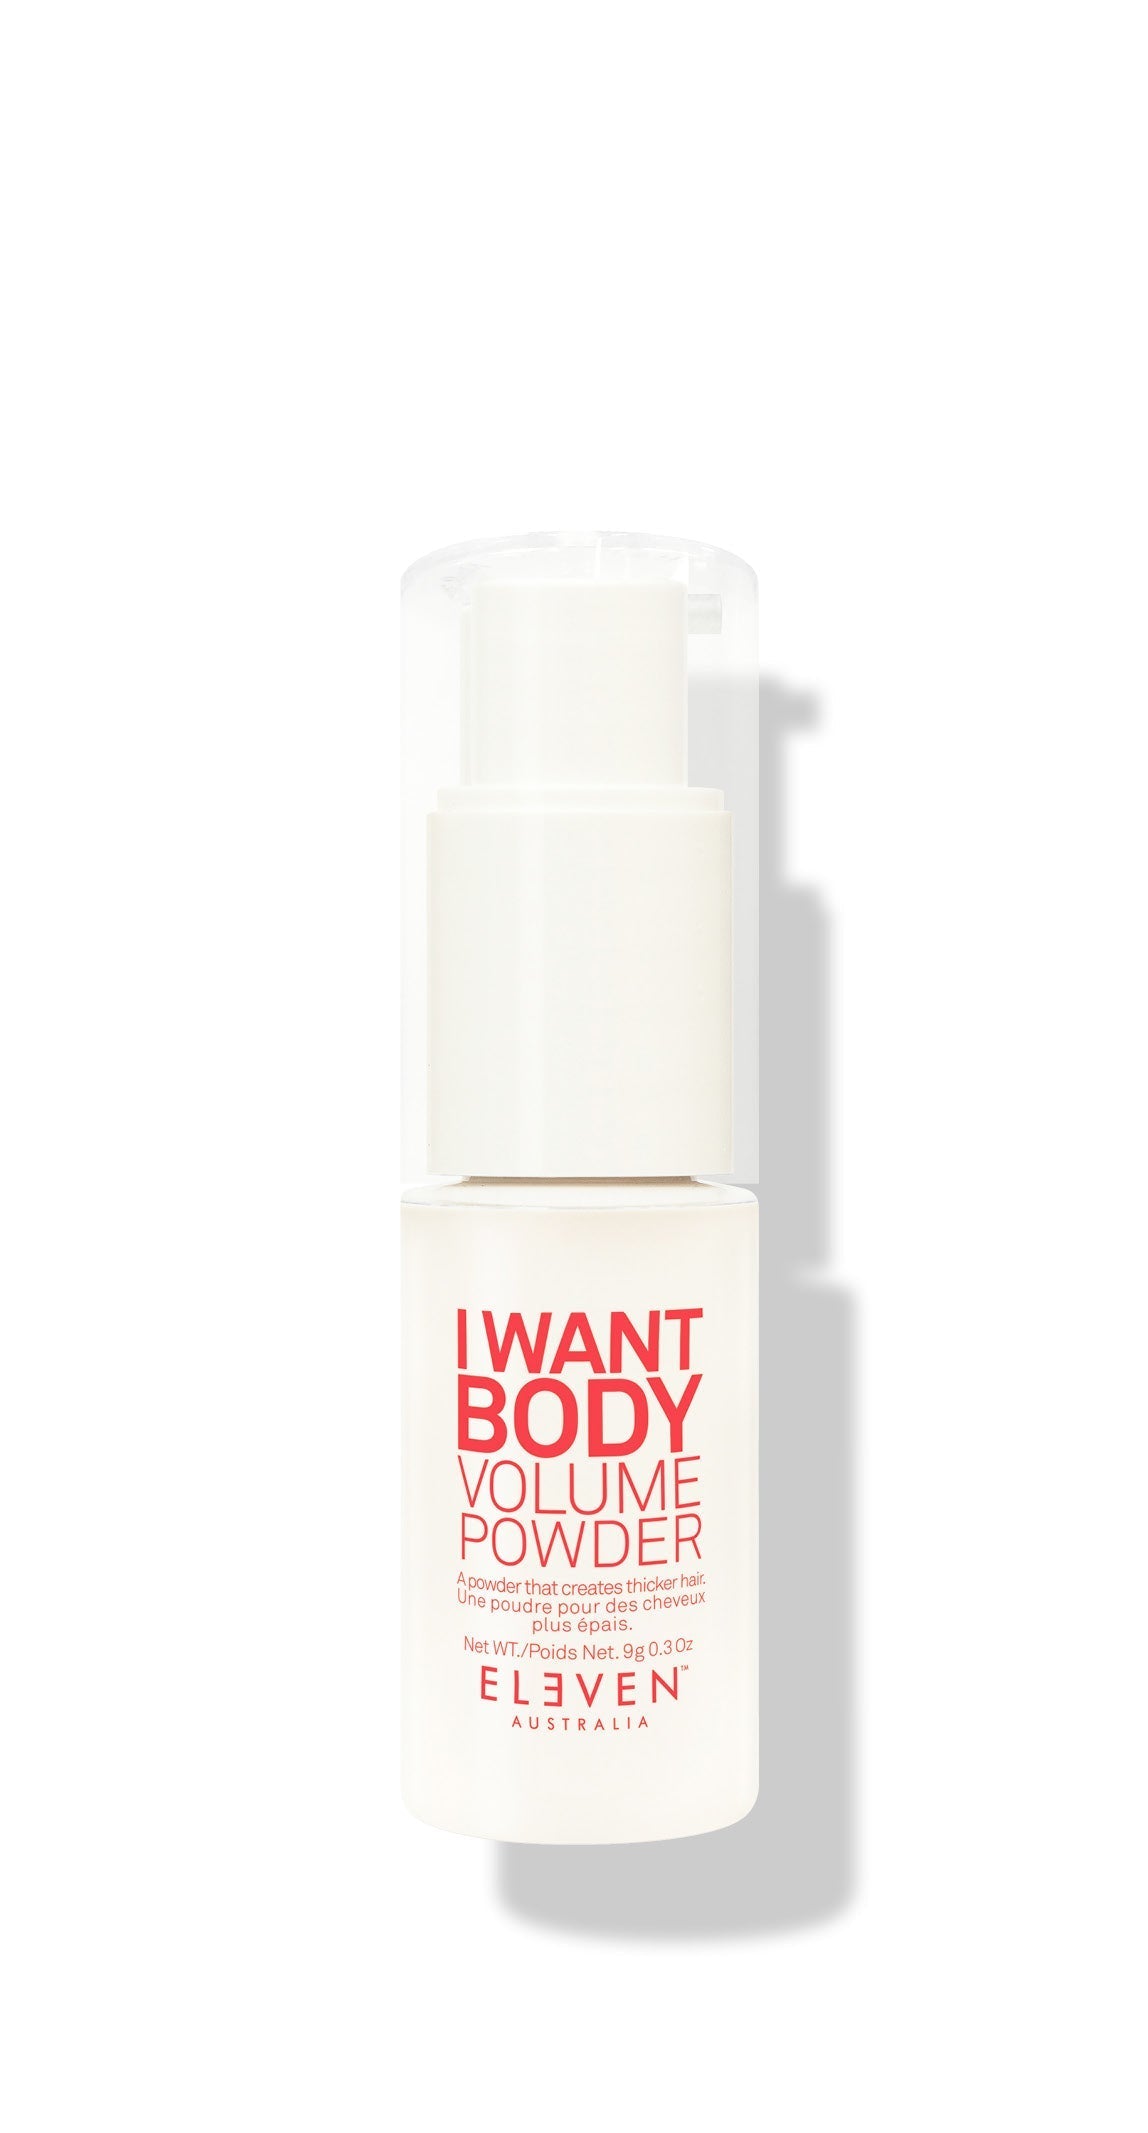 I Want Body Volume Powder - ELEVEN Australia